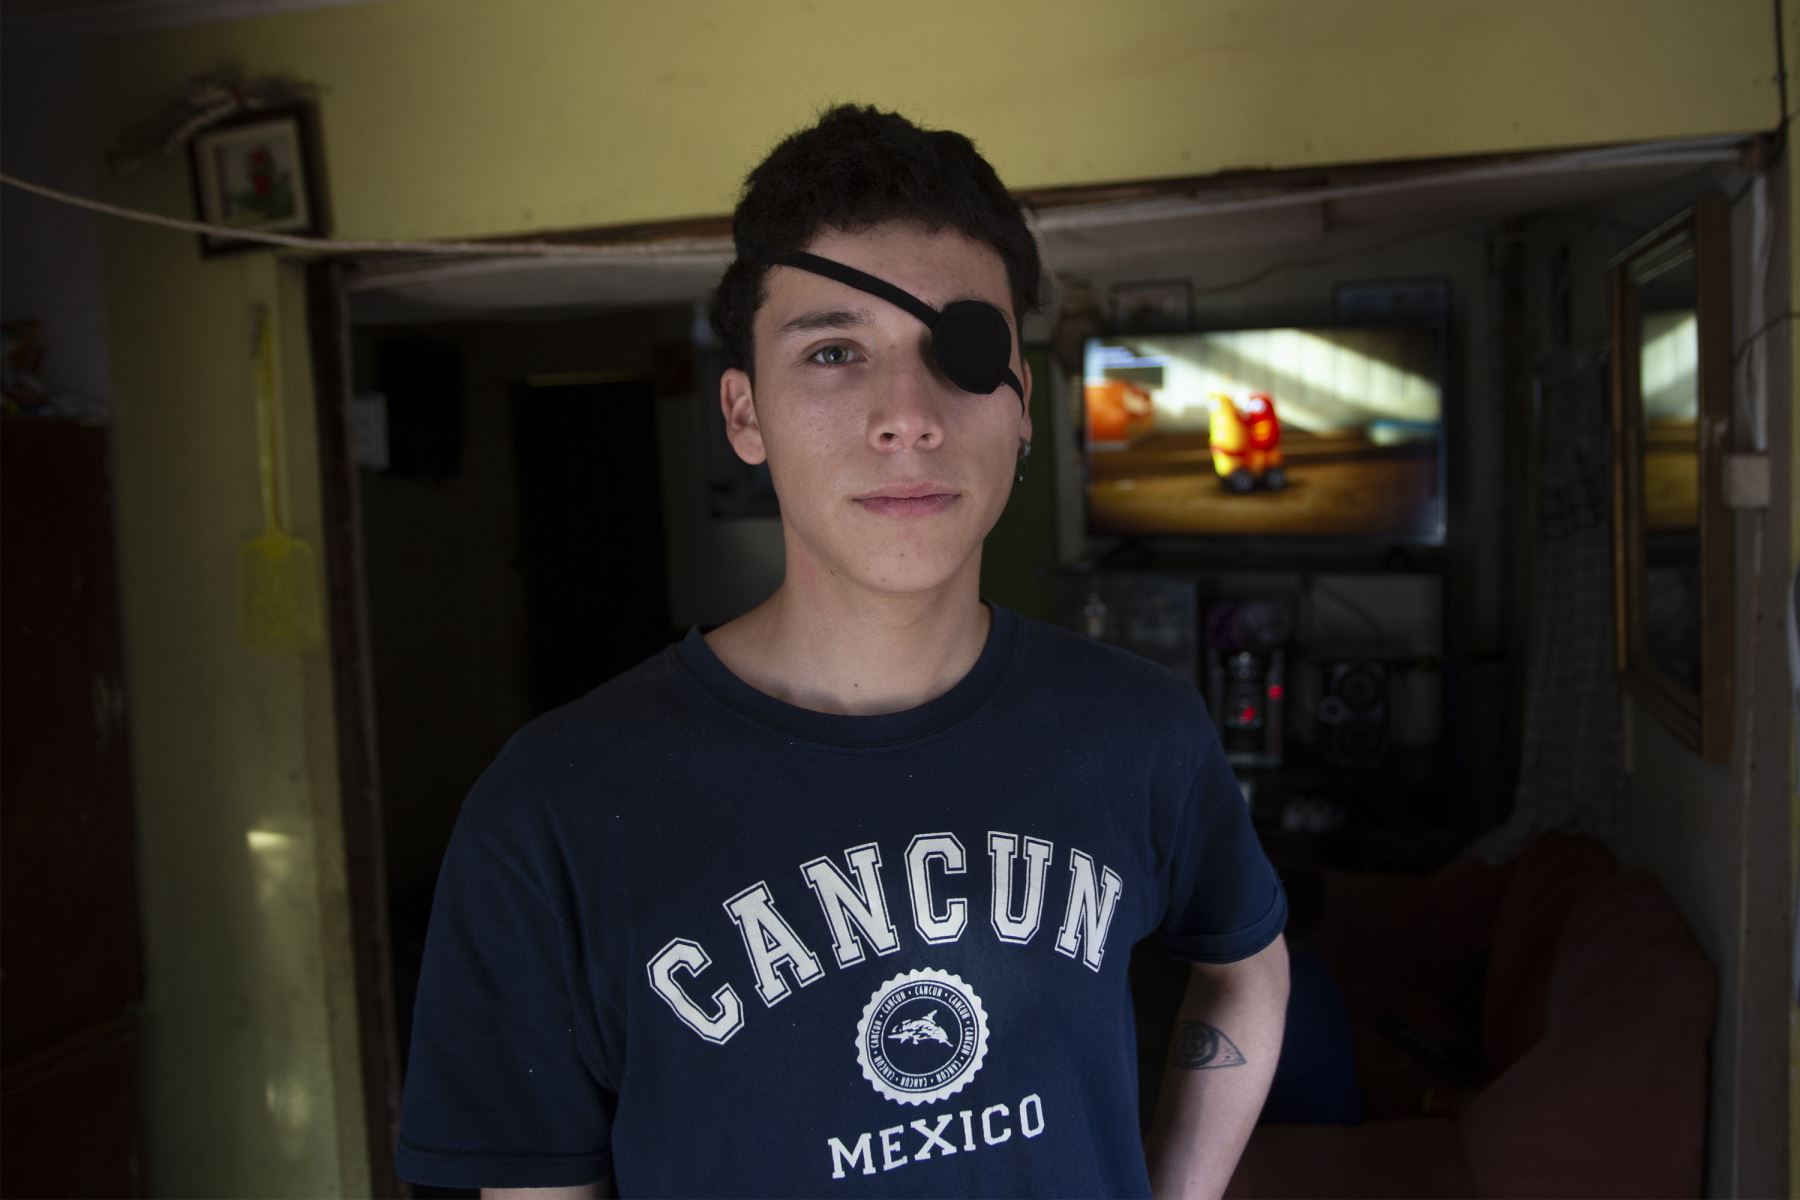 El estudiante chileno Carlos Vivanco, de 18 años, que resultó herido en el ojo debido a la violencia policial mientras protestaba, posa para una foto en su casa en Santiago. 
Foto: AFP